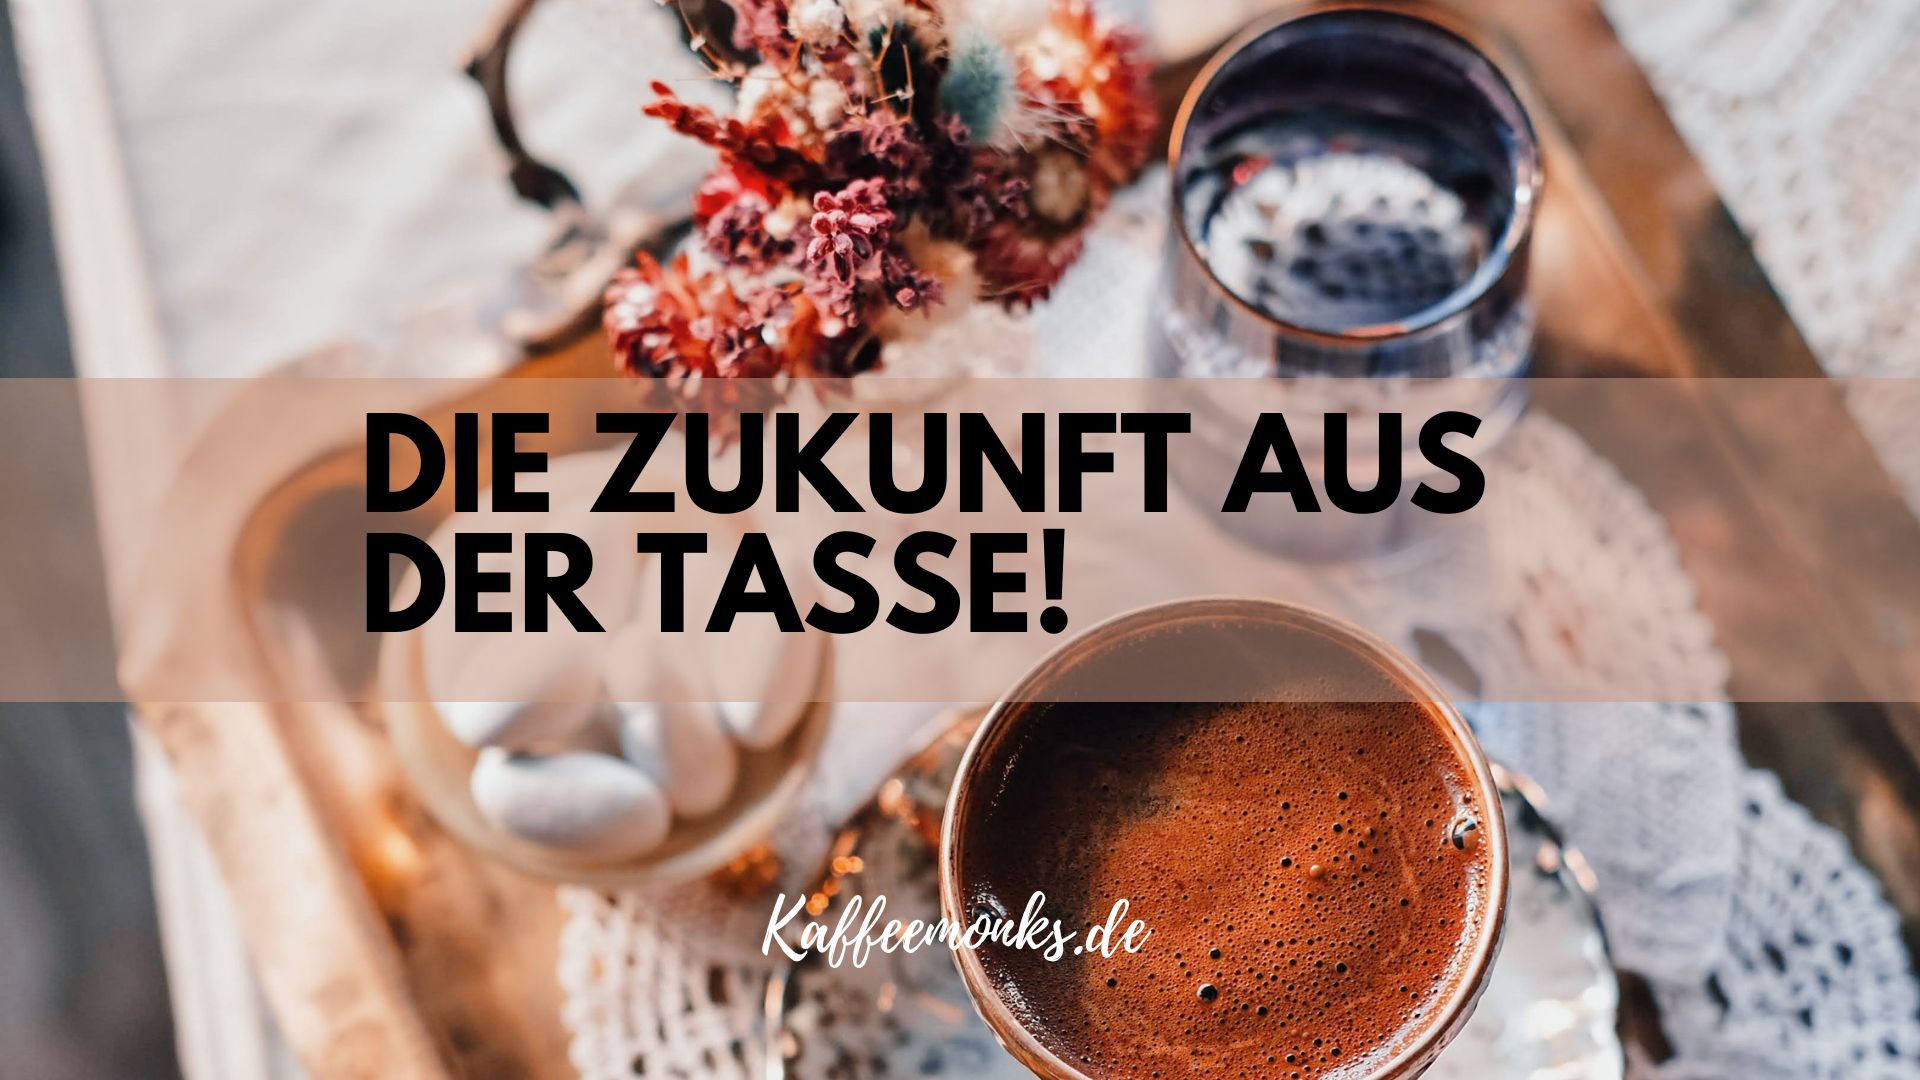 You are currently viewing DEINE ZUKUNFT IN EINER TASSE: KAFFEESATZ ONLINE LESEN LEICHT GEMACHT